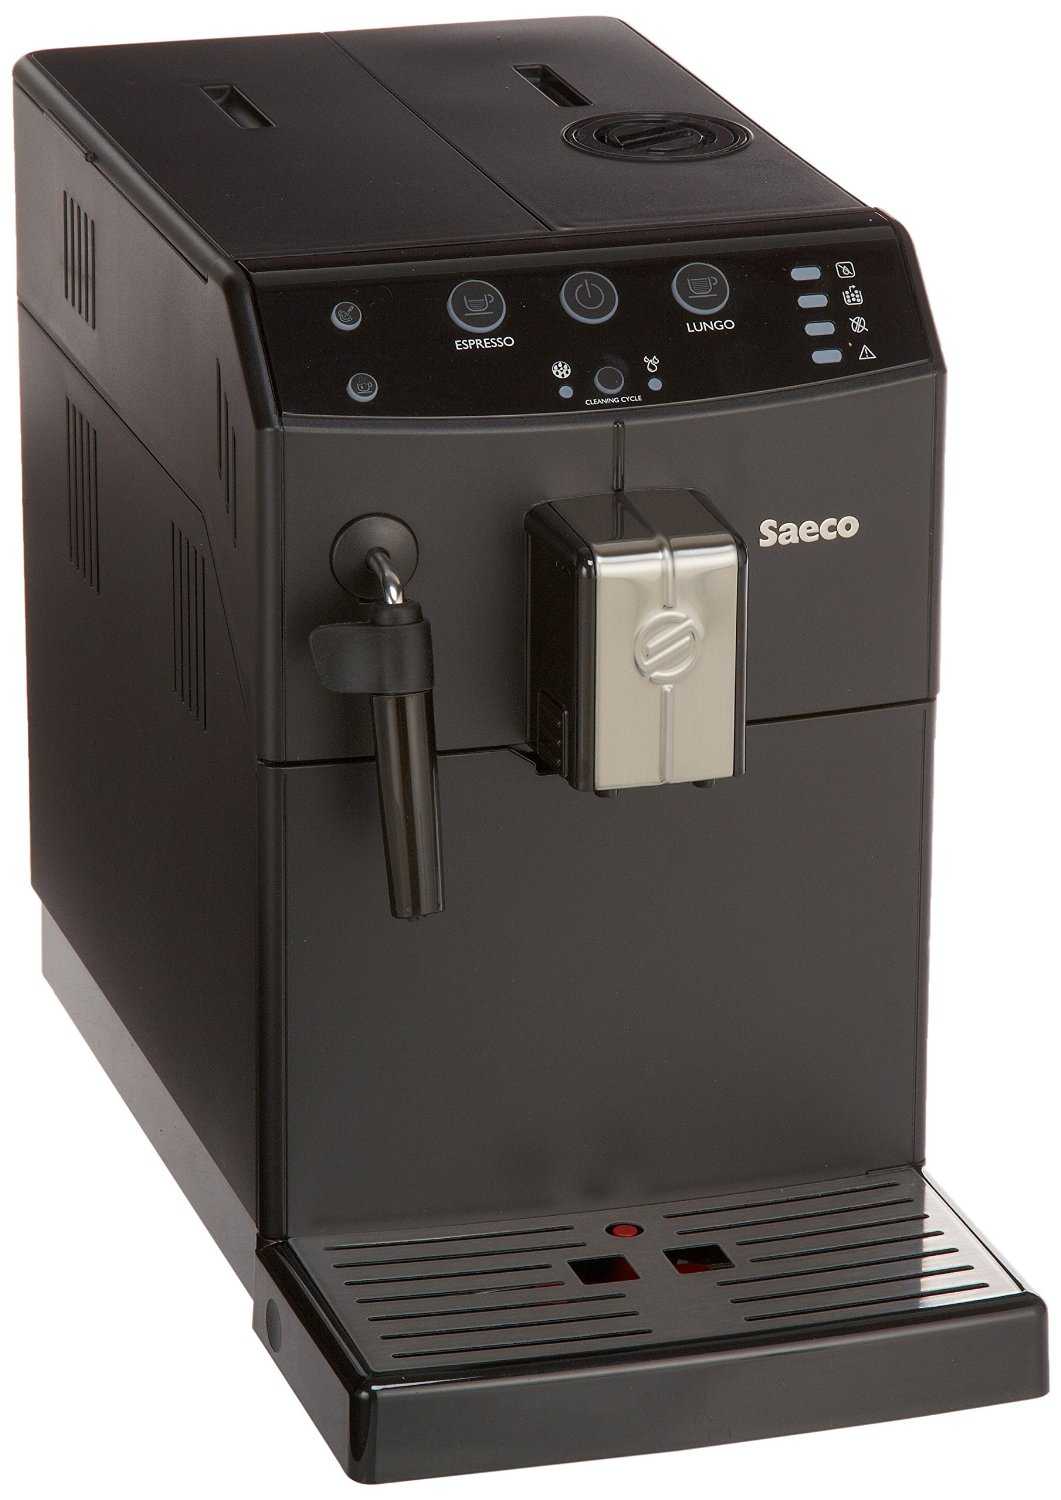 Сложный бытовой прибор, каким является кофеварка, испытывает при работе сильные негативные воздействия воды, температуры, мелких частиц.